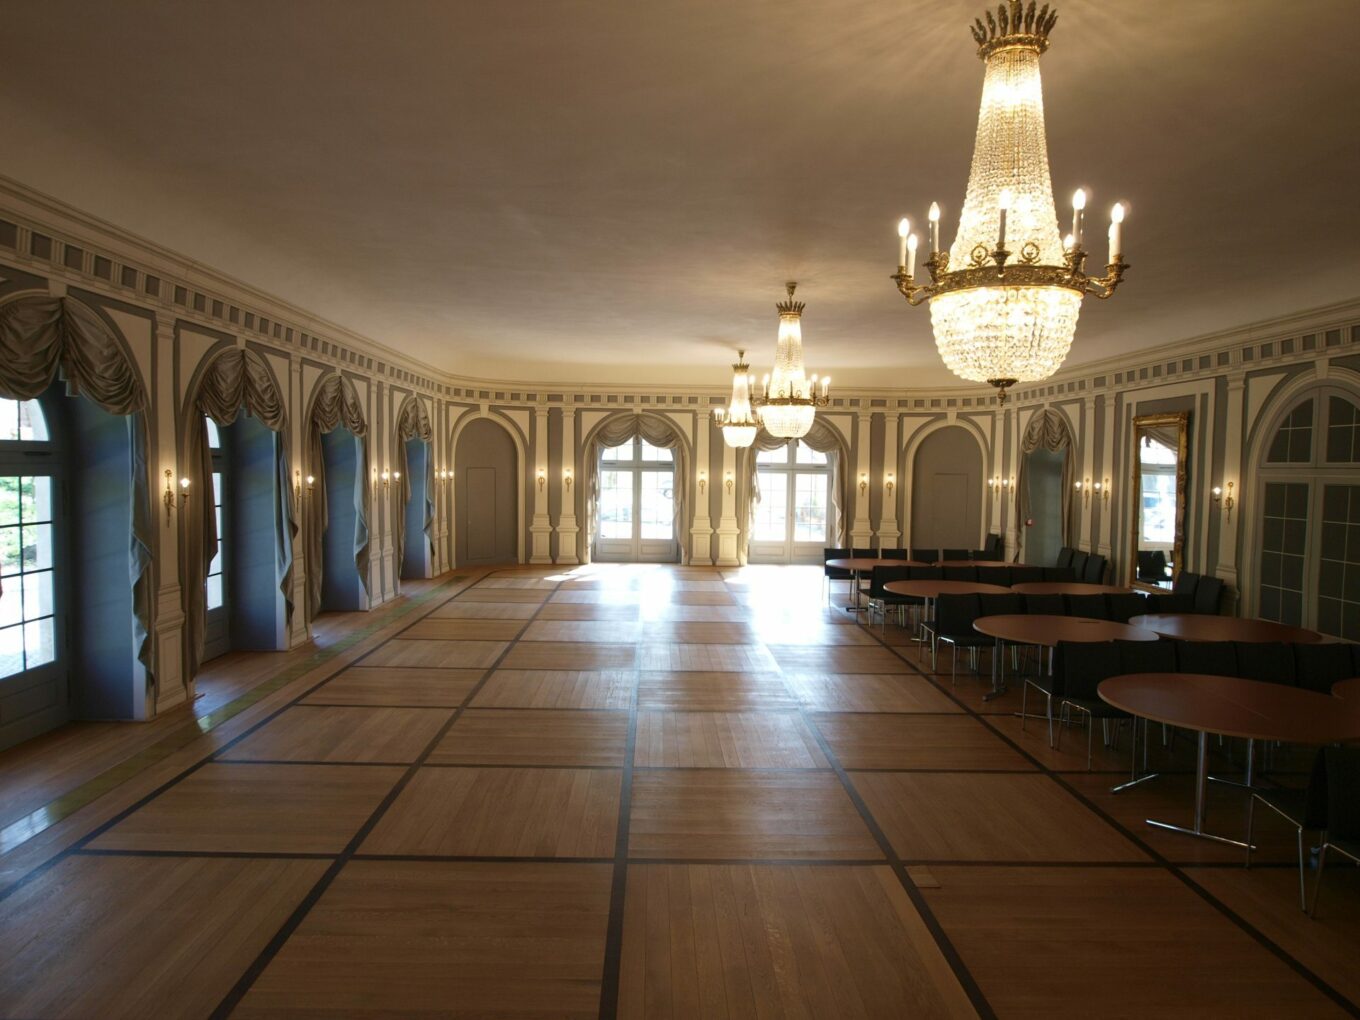 Der große Arkadensaal bevor die Tische für eine Feierlichkeit aufgebaut werden